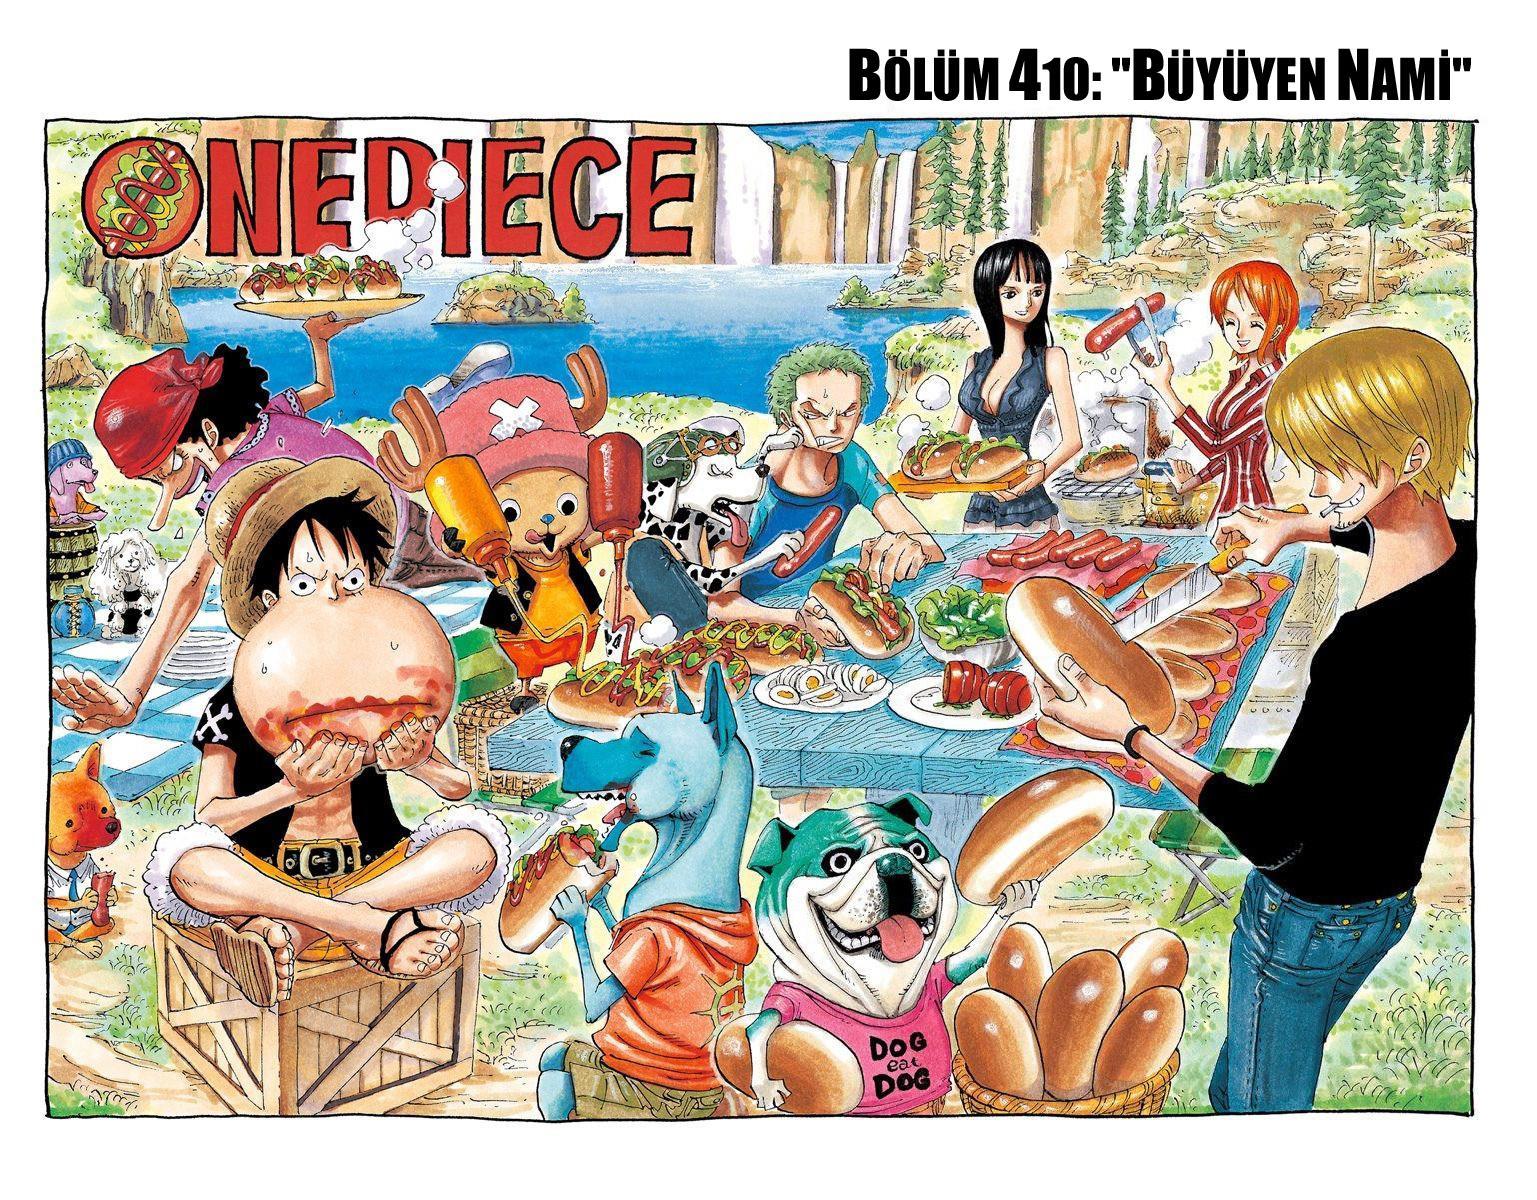 One Piece [Renkli] mangasının 0410 bölümünün 2. sayfasını okuyorsunuz.